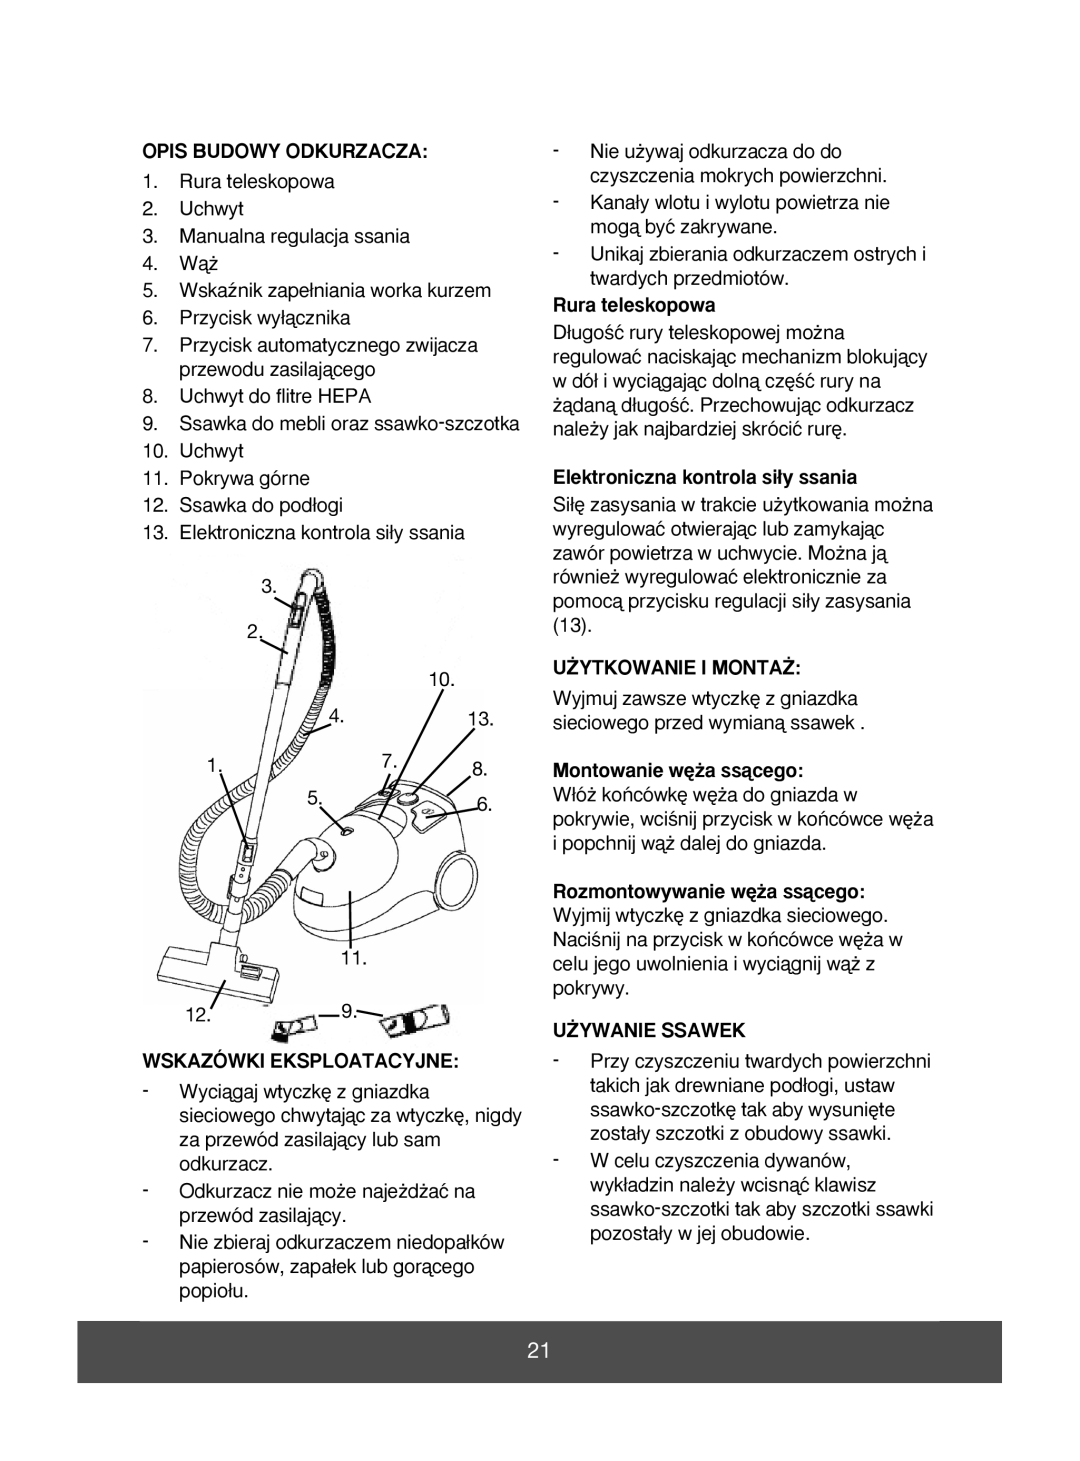 Melissa 640-071 manual Opis Budowy Odkurzacza, Rura teleskopowa, Elektroniczna kontrola si∏y ssania, U˚Ytkowanie I Monta˚ 